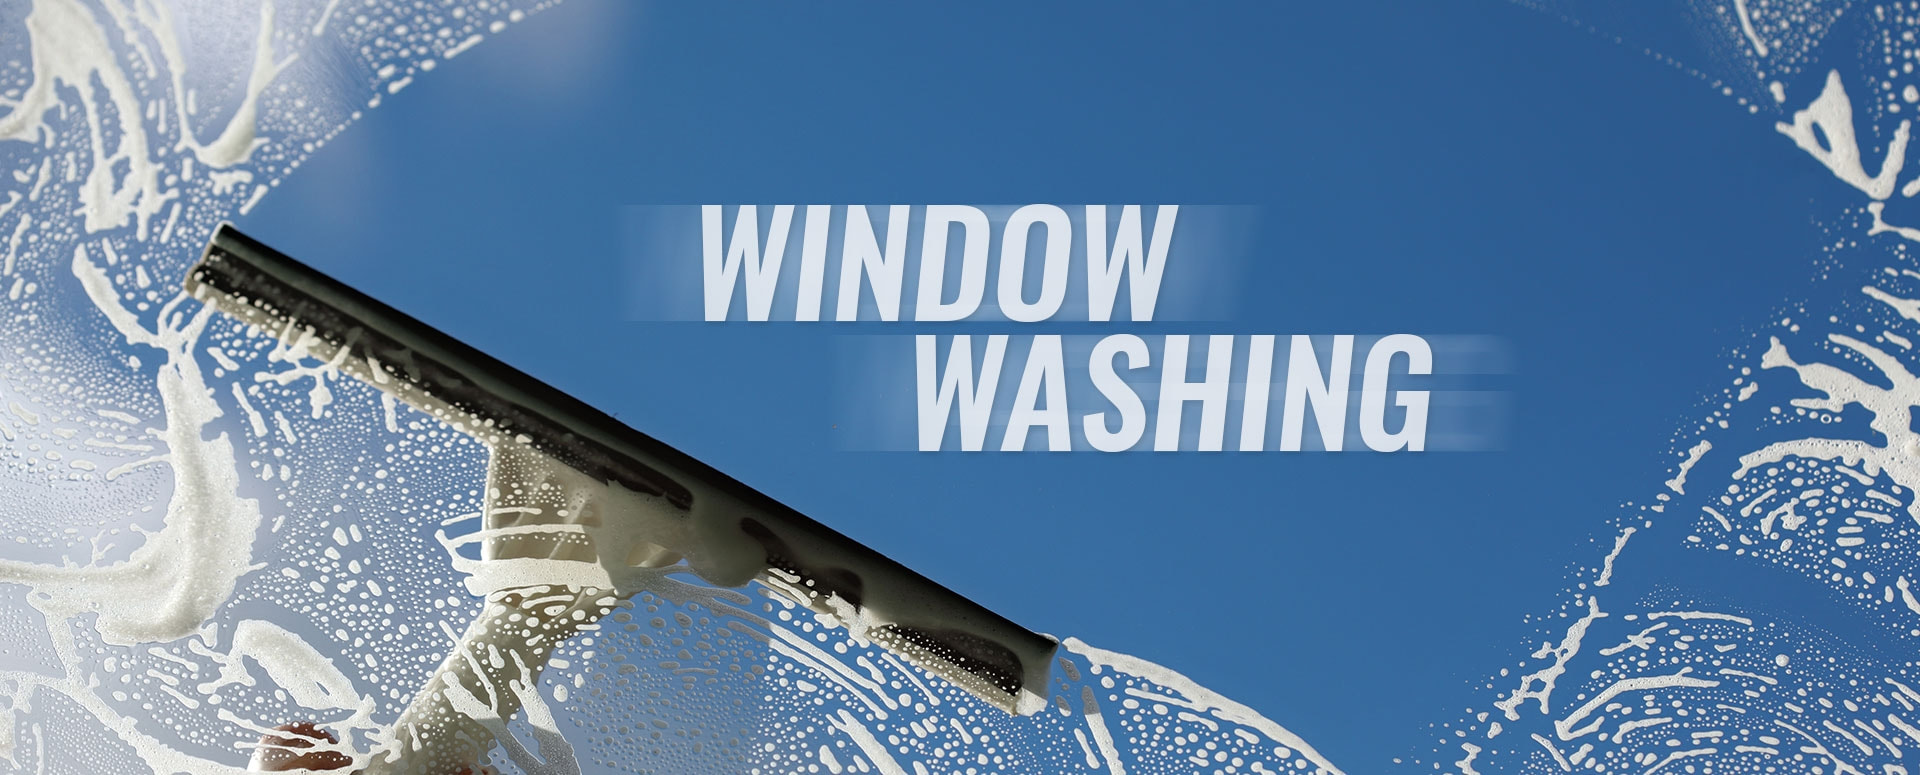 window washing header